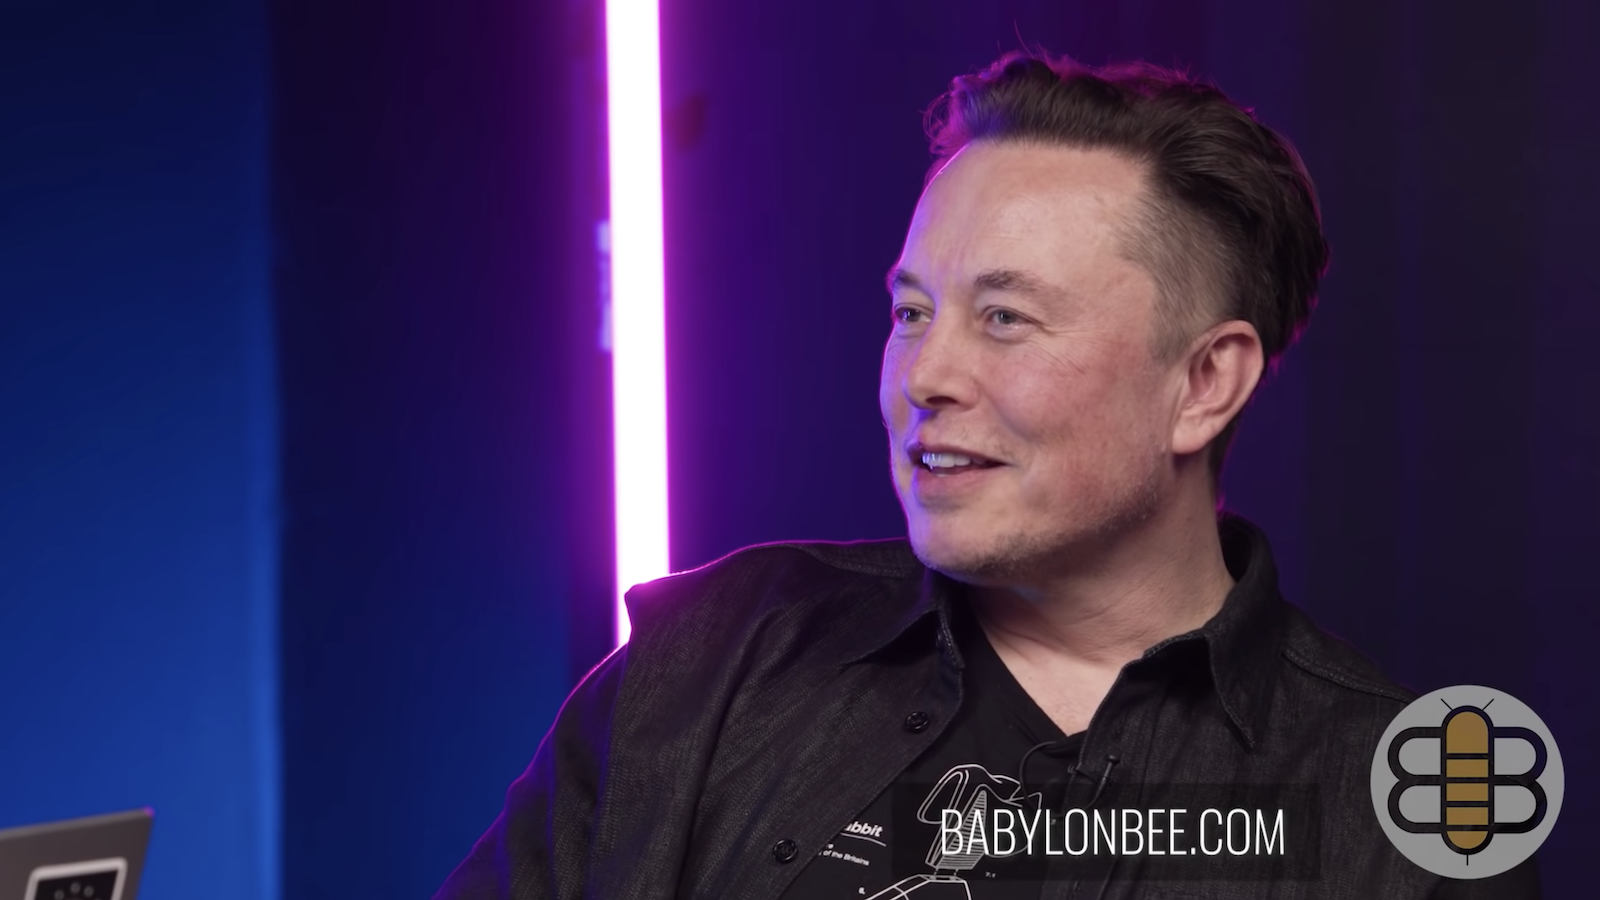 Elon Musk se senta com a equipe de The Babylon Bee para falar sobre acordar, lizabeth Warren, tributar os ricos, o Metaverso, qual super-herói Elon seria e como a esquerda está matando a comédia por meio de The Babylon Bee